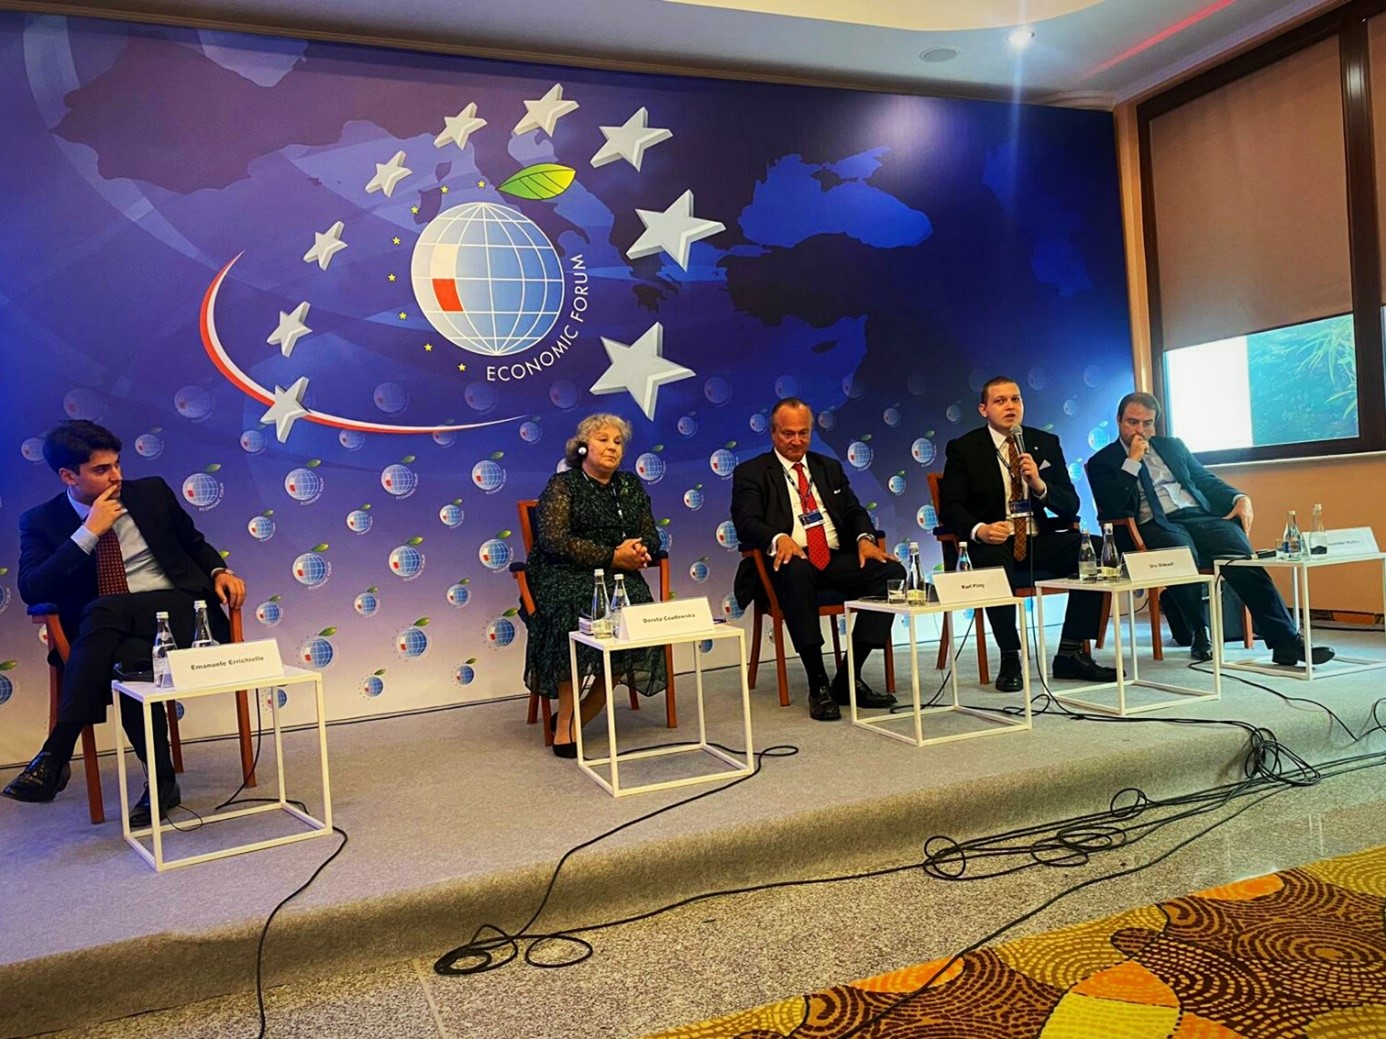 Eindrücke von der Podiumsdiskussion des BWA, die im Rahmen des 30. International Economic Forum in der Veranstaltungsreihe „Internationale Politik“ stattfand.